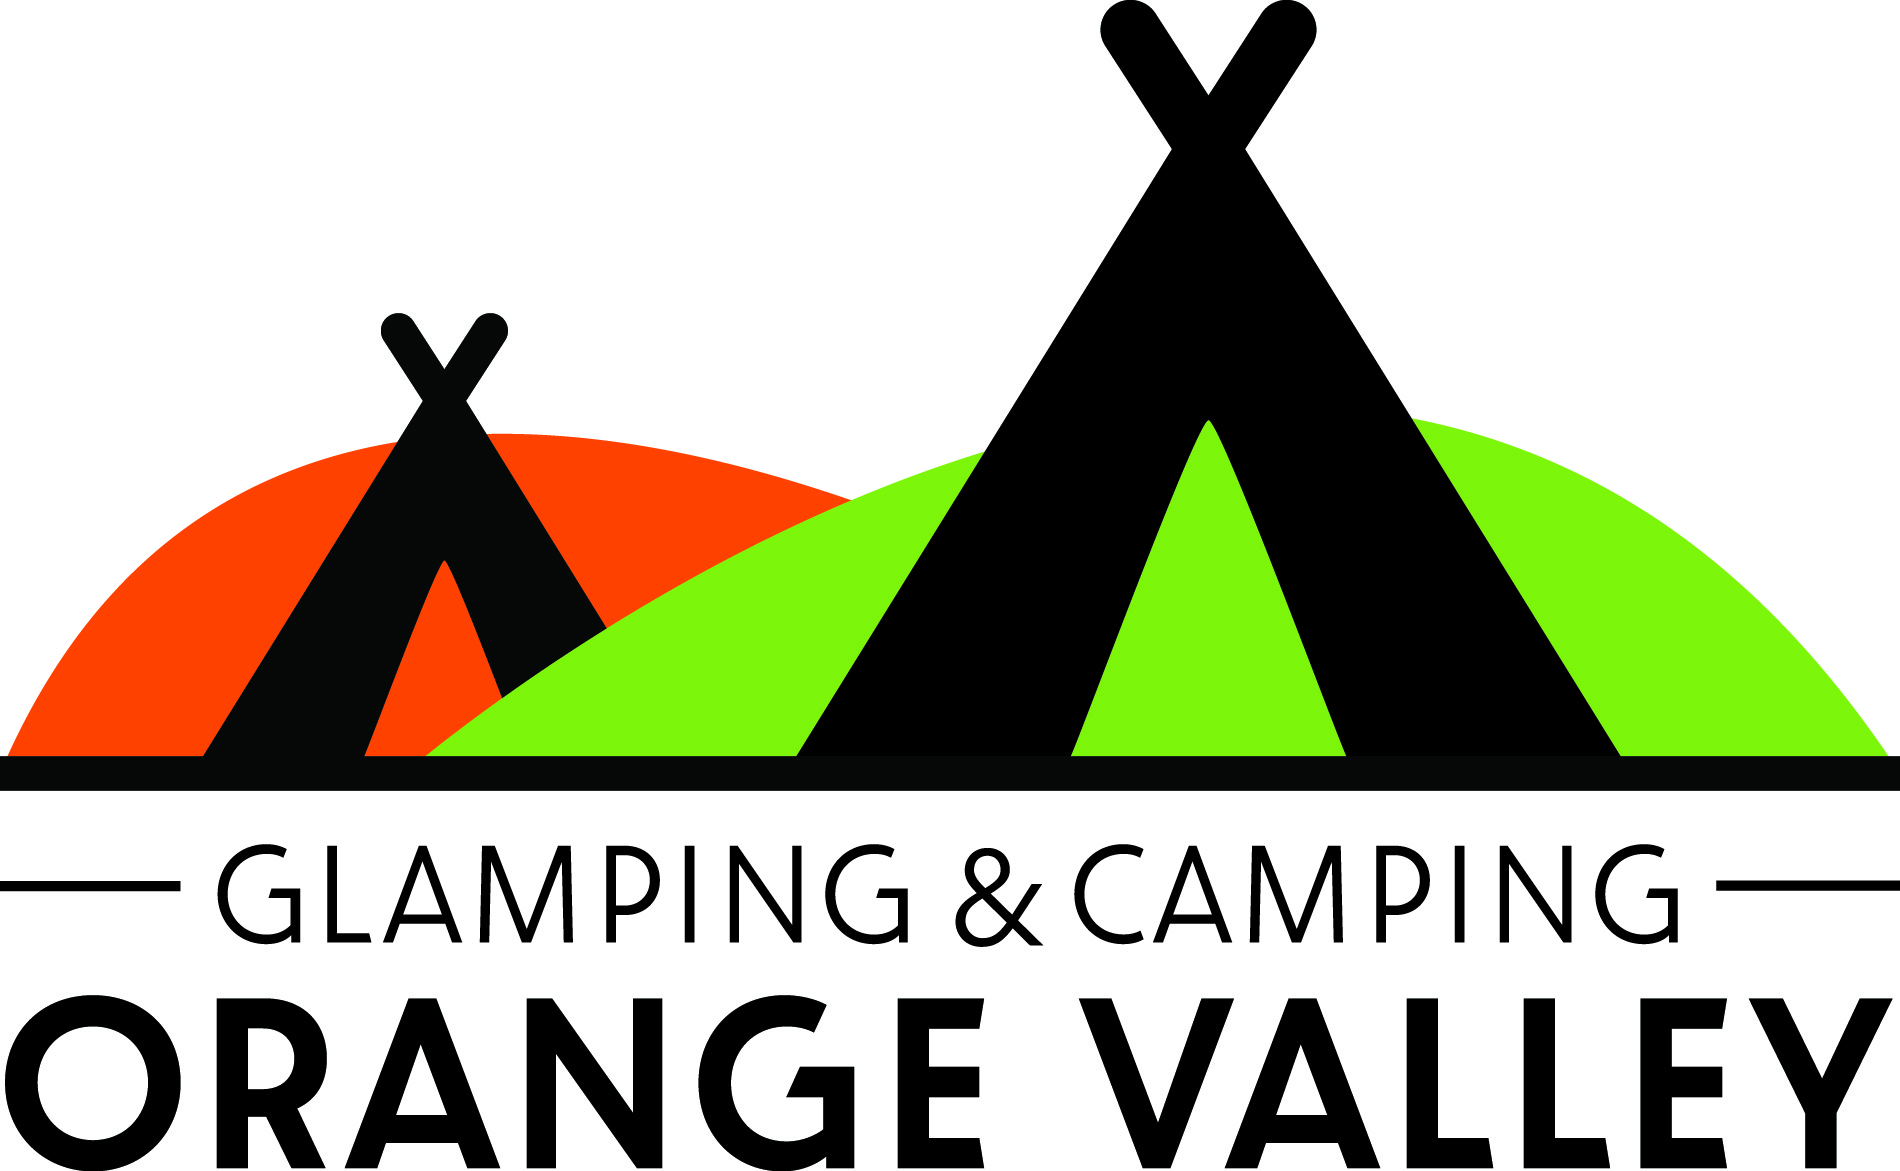 Glamping & Camping Orange Valley